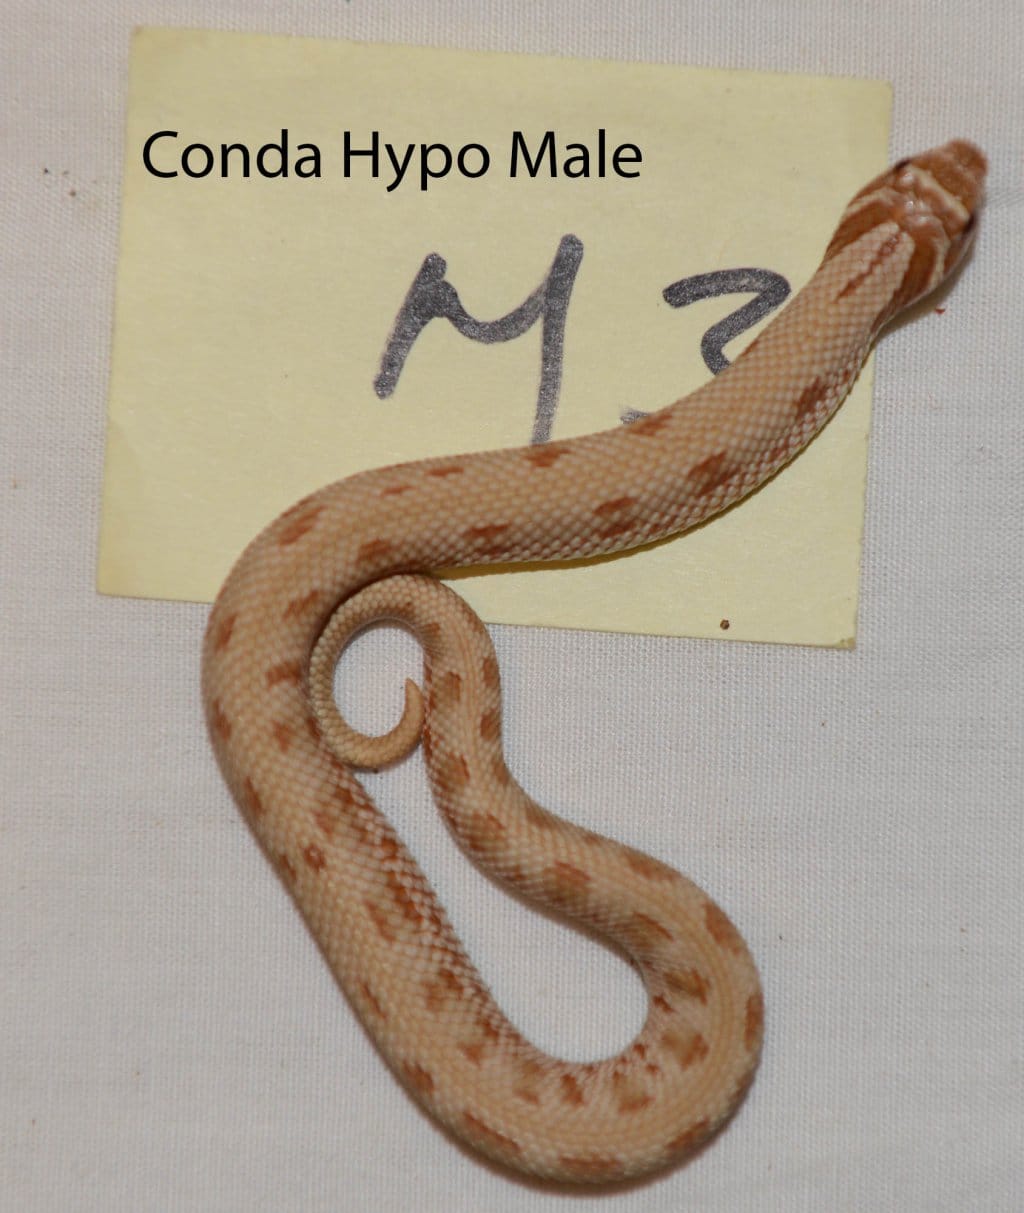 Conda Hypo Male Western Hognose by HC Premium Reptiles